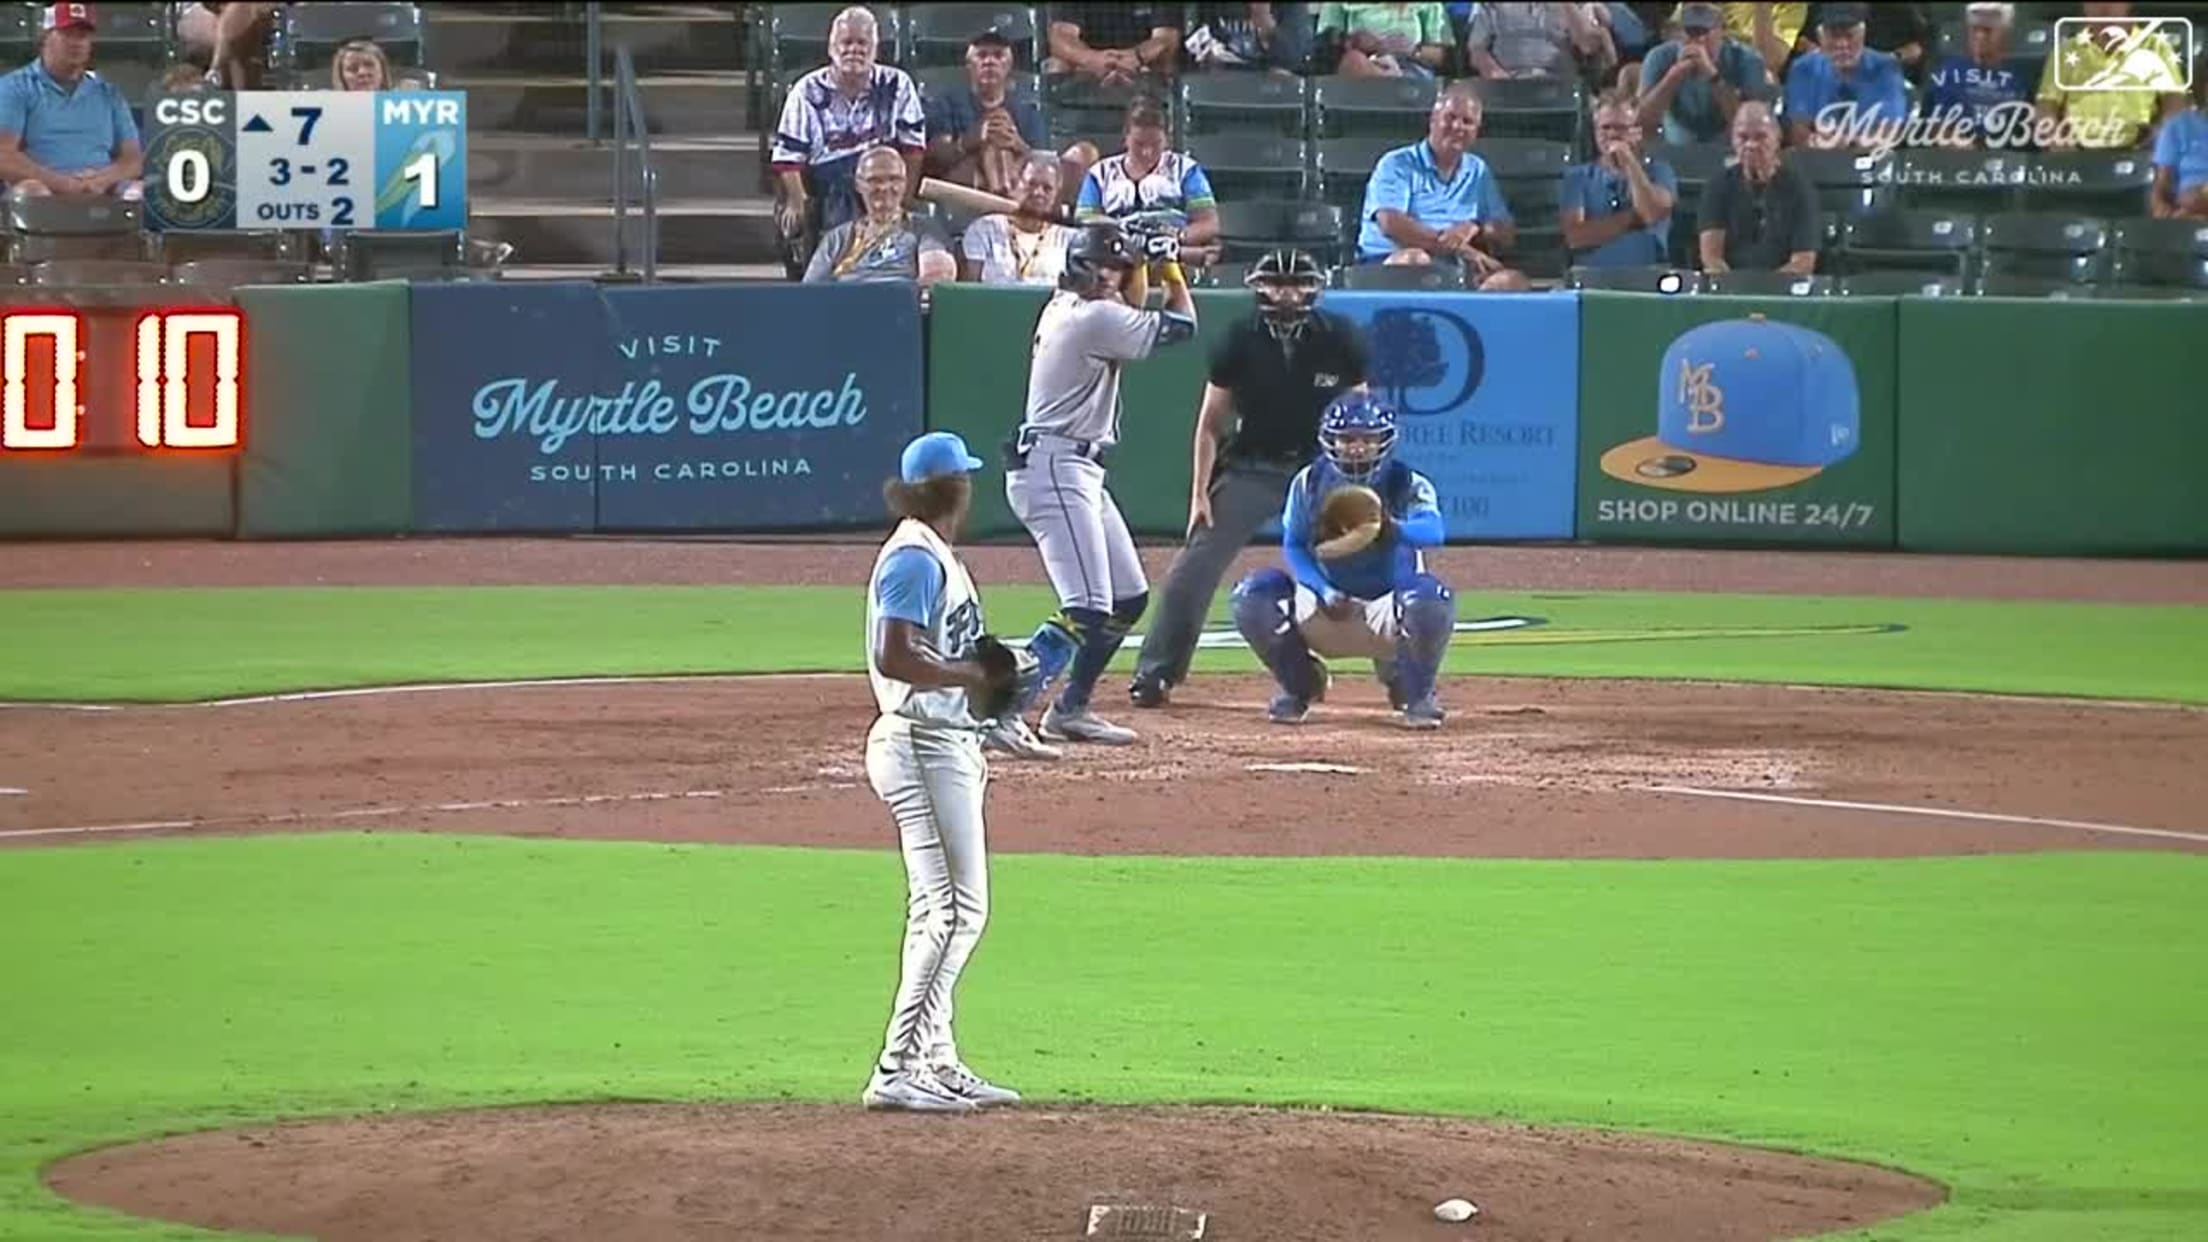 Kevin Valdez's ninth strikeout